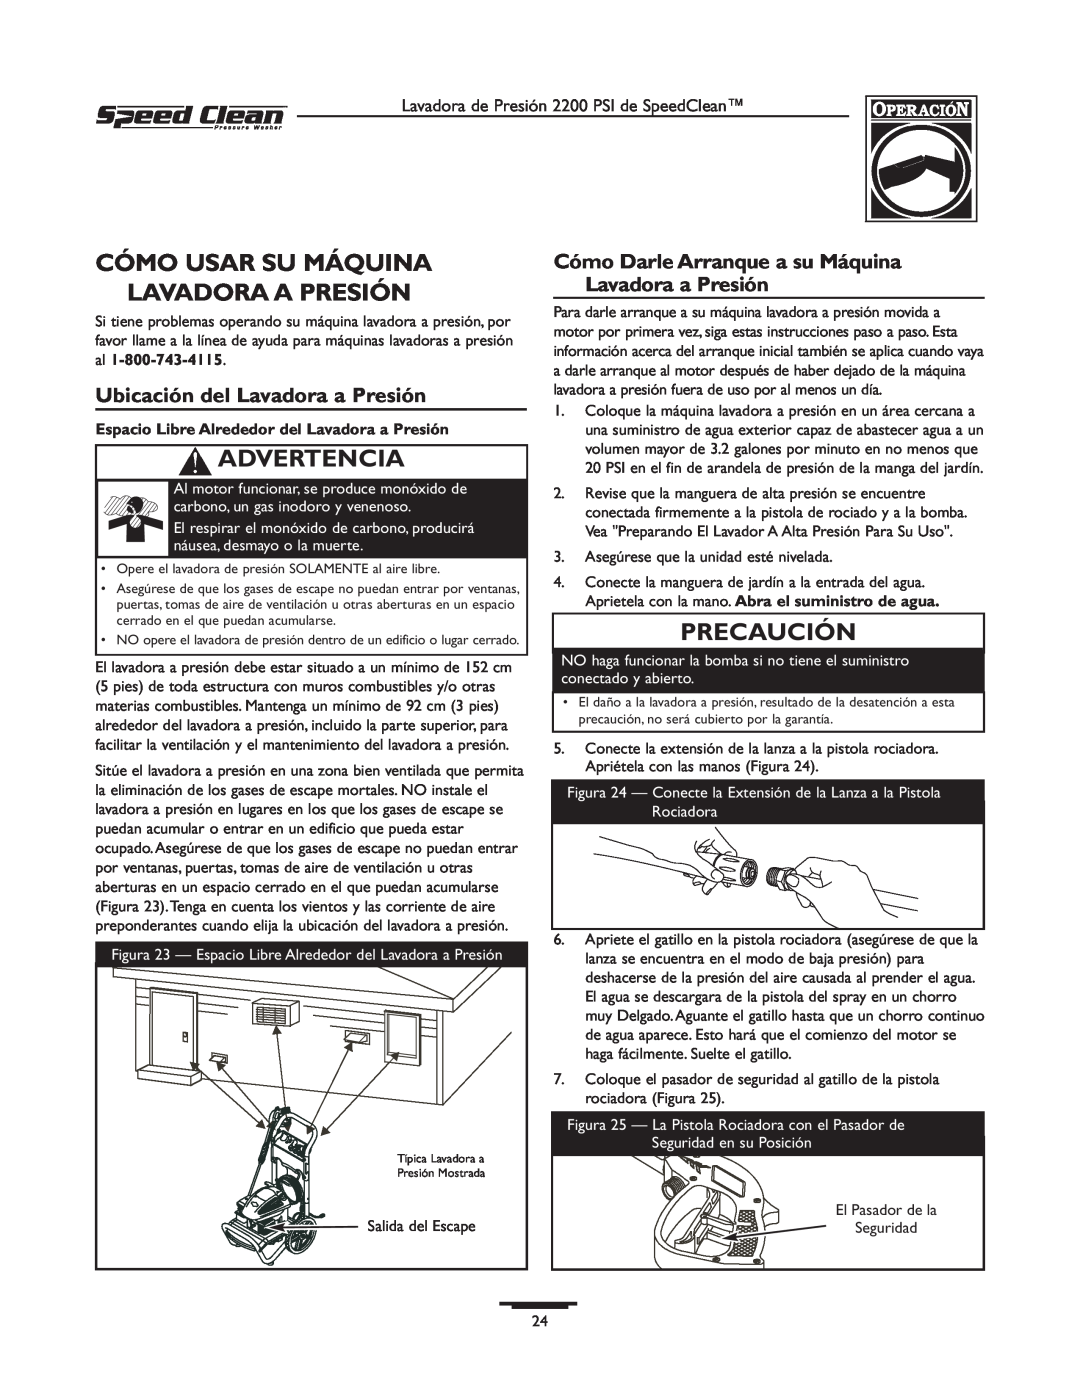 Briggs & Stratton 020239-1 Cómo Usar Su Máquina Lavadora A Presión, Ubicación del Lavadora a Presión, Advertencia 